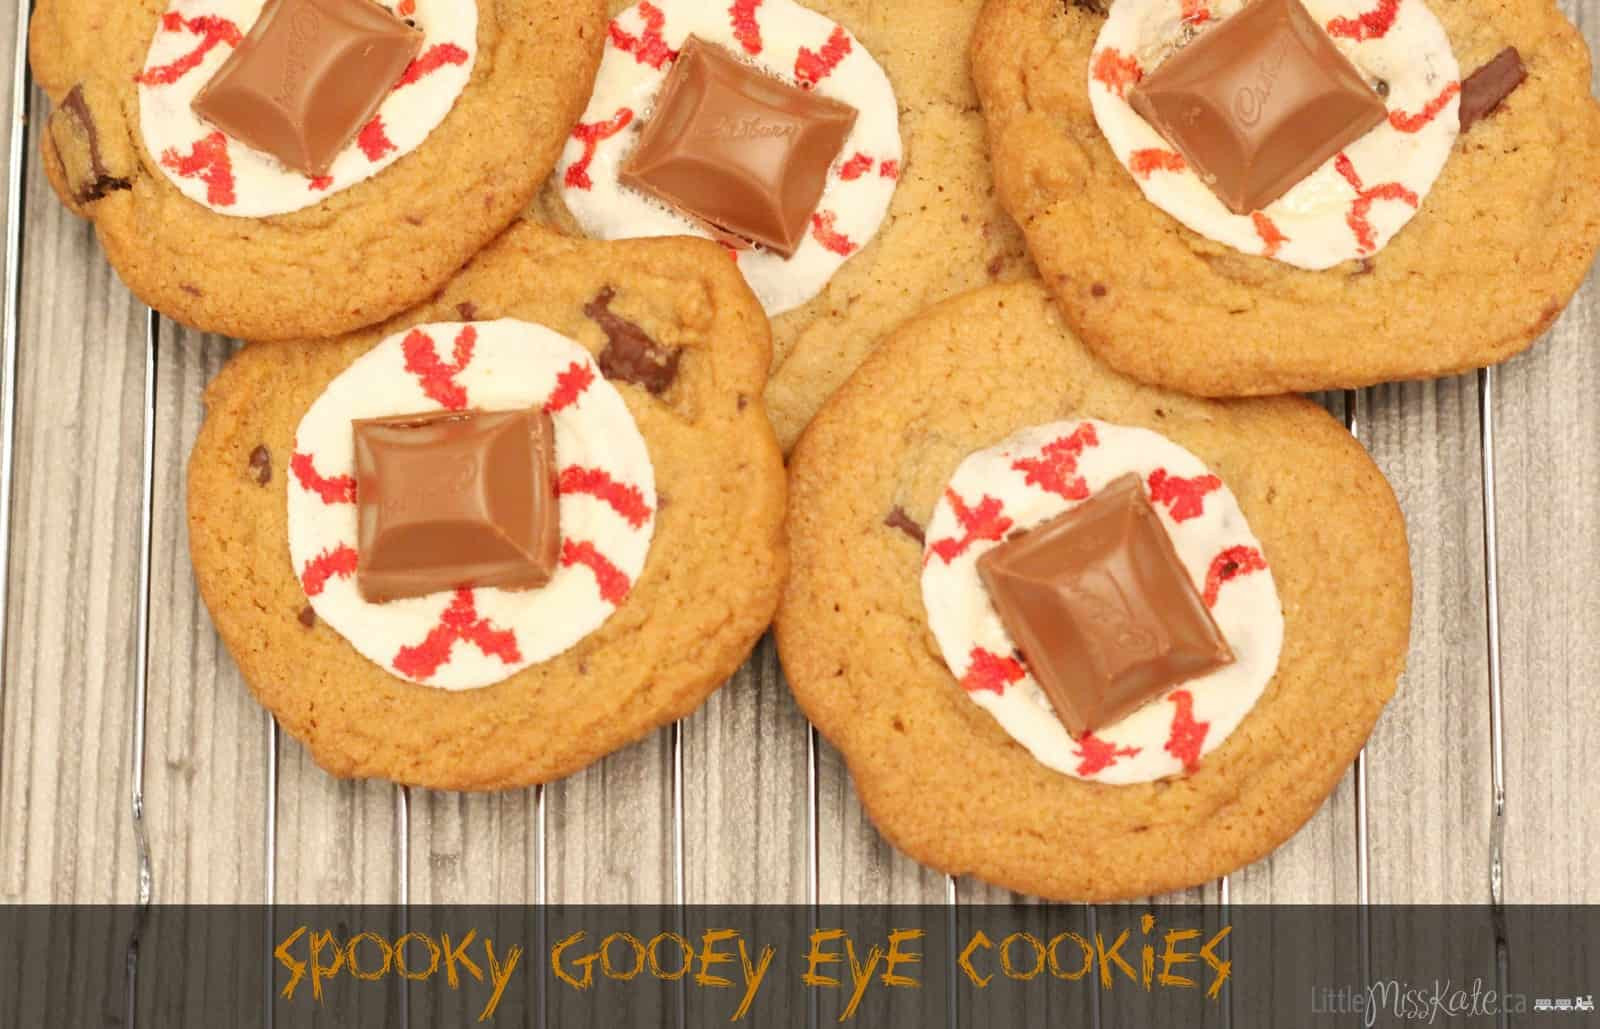 Spooky Halloween Desserts
 Halloween Dessert Recipe Spooky Gooey Eye Cookies